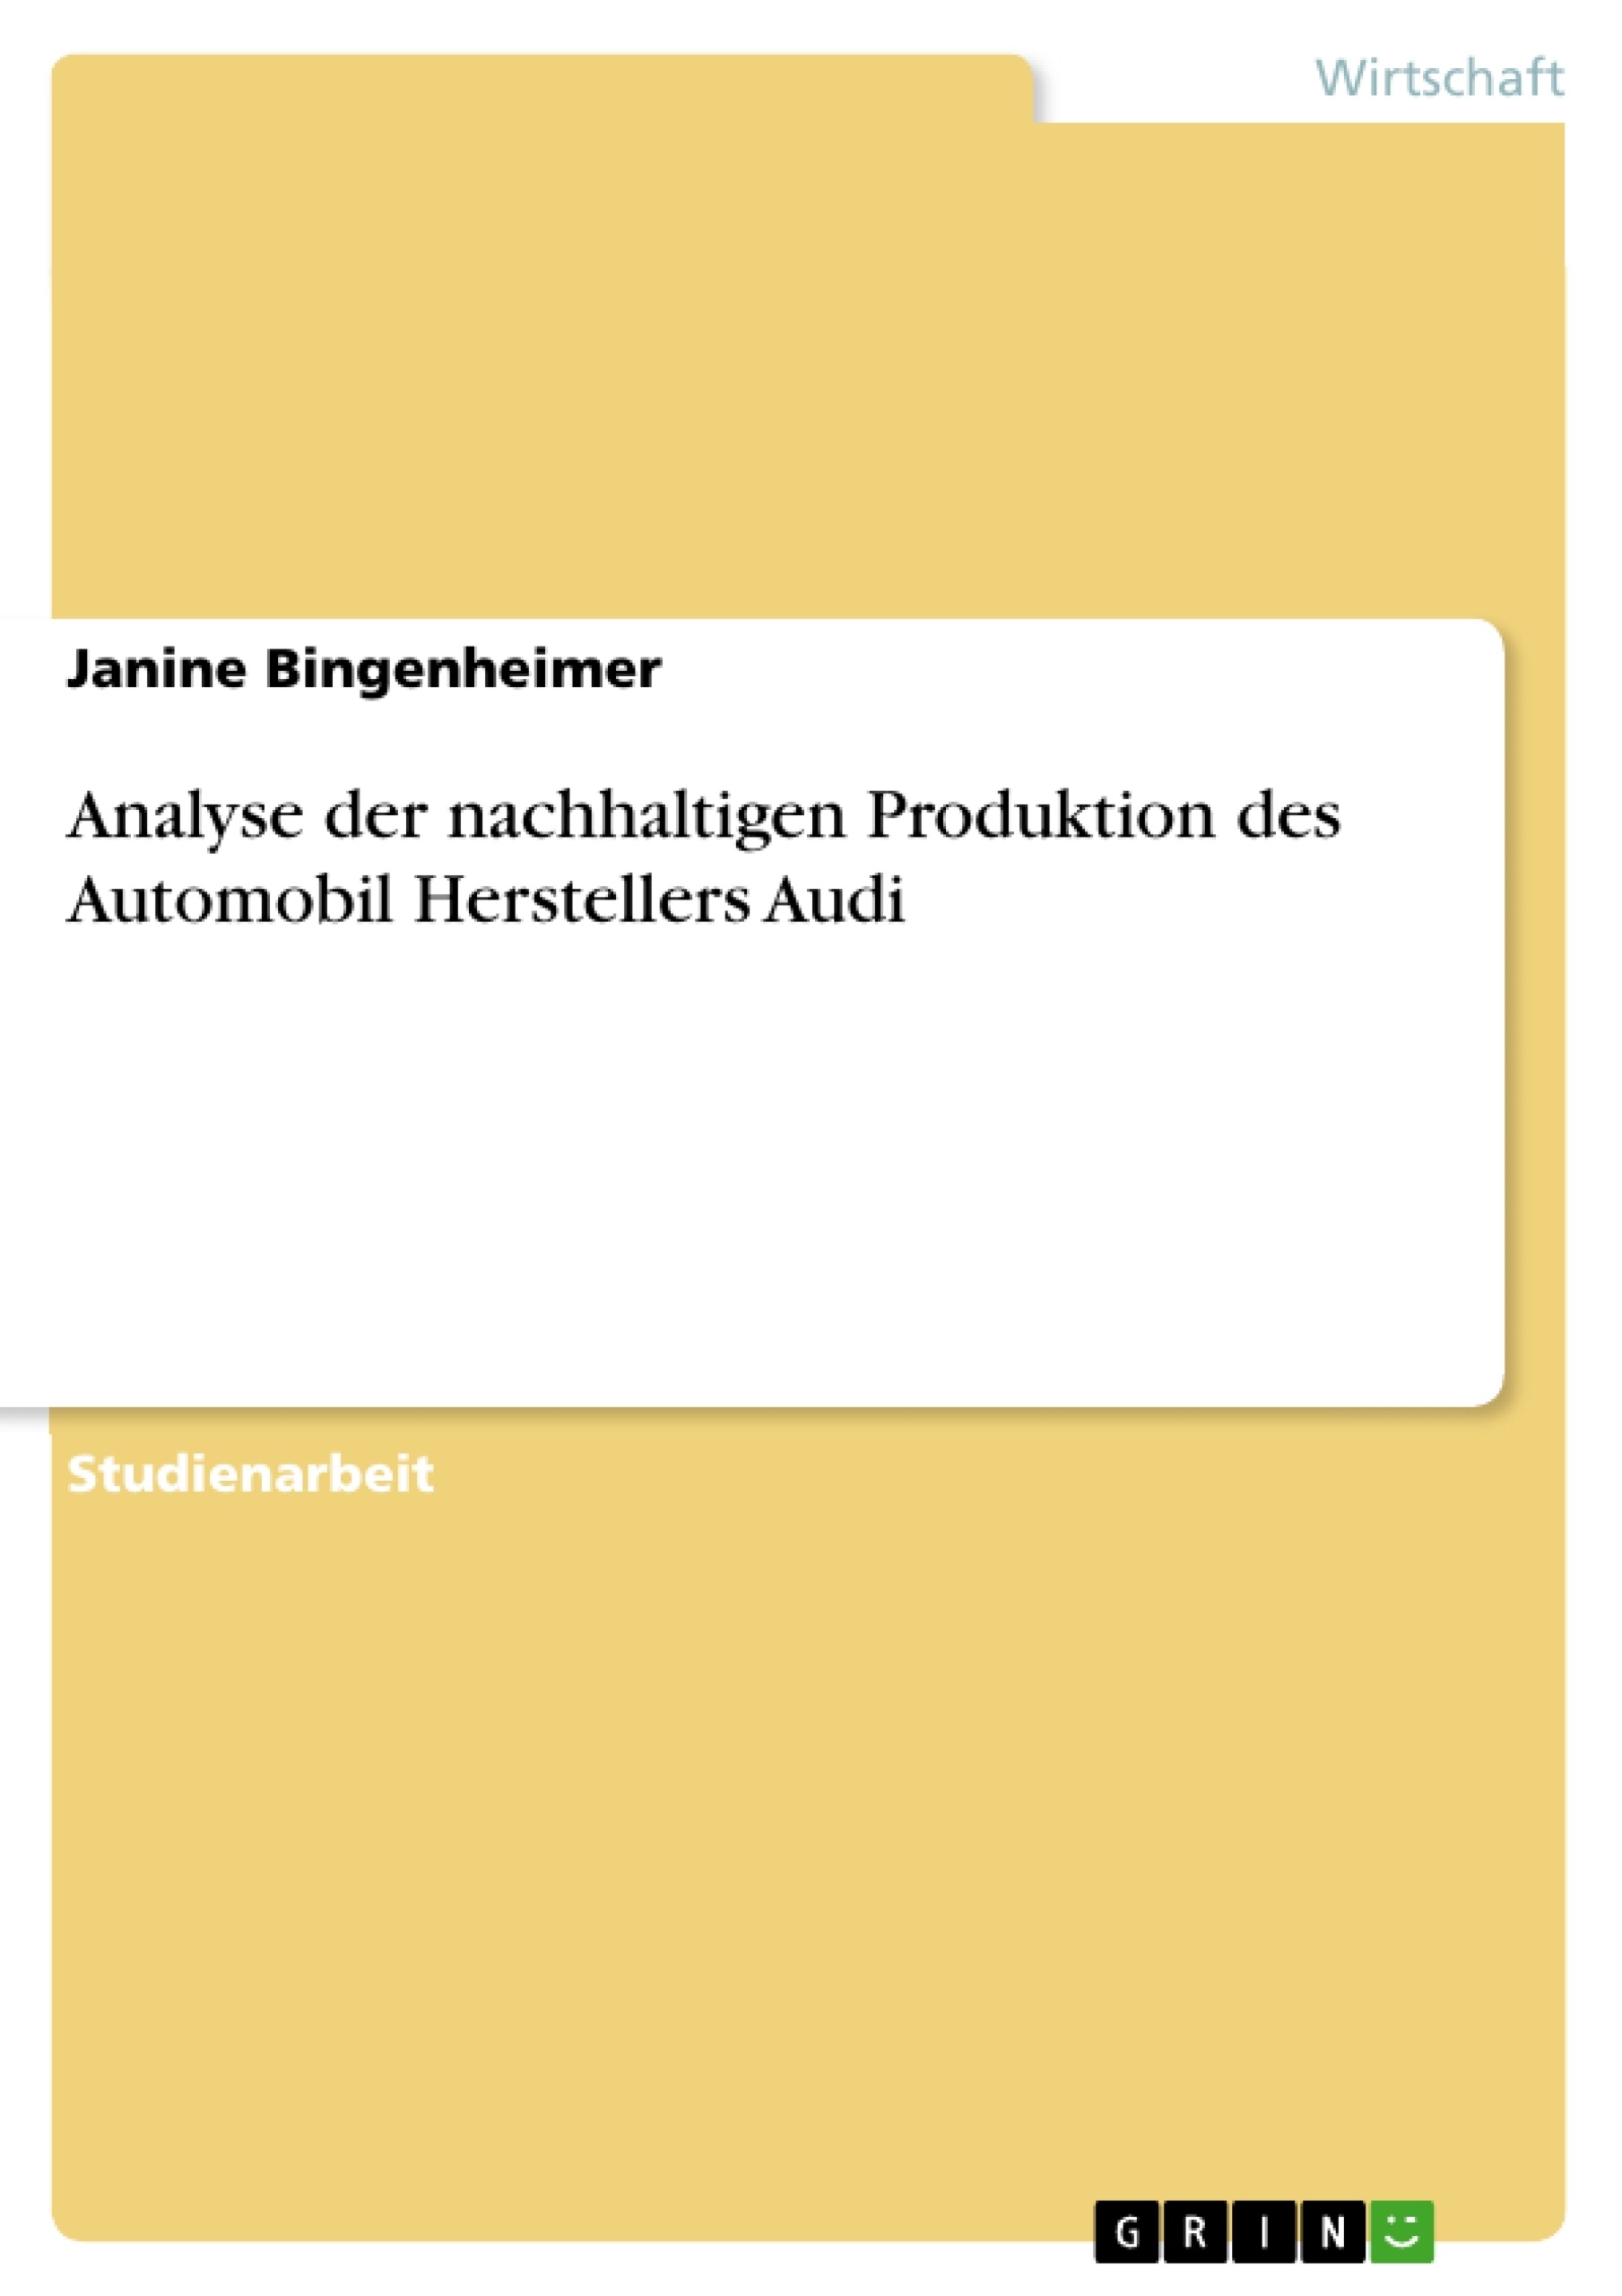 Titre: Analyse der nachhaltigen Produktion des Automobil Herstellers Audi